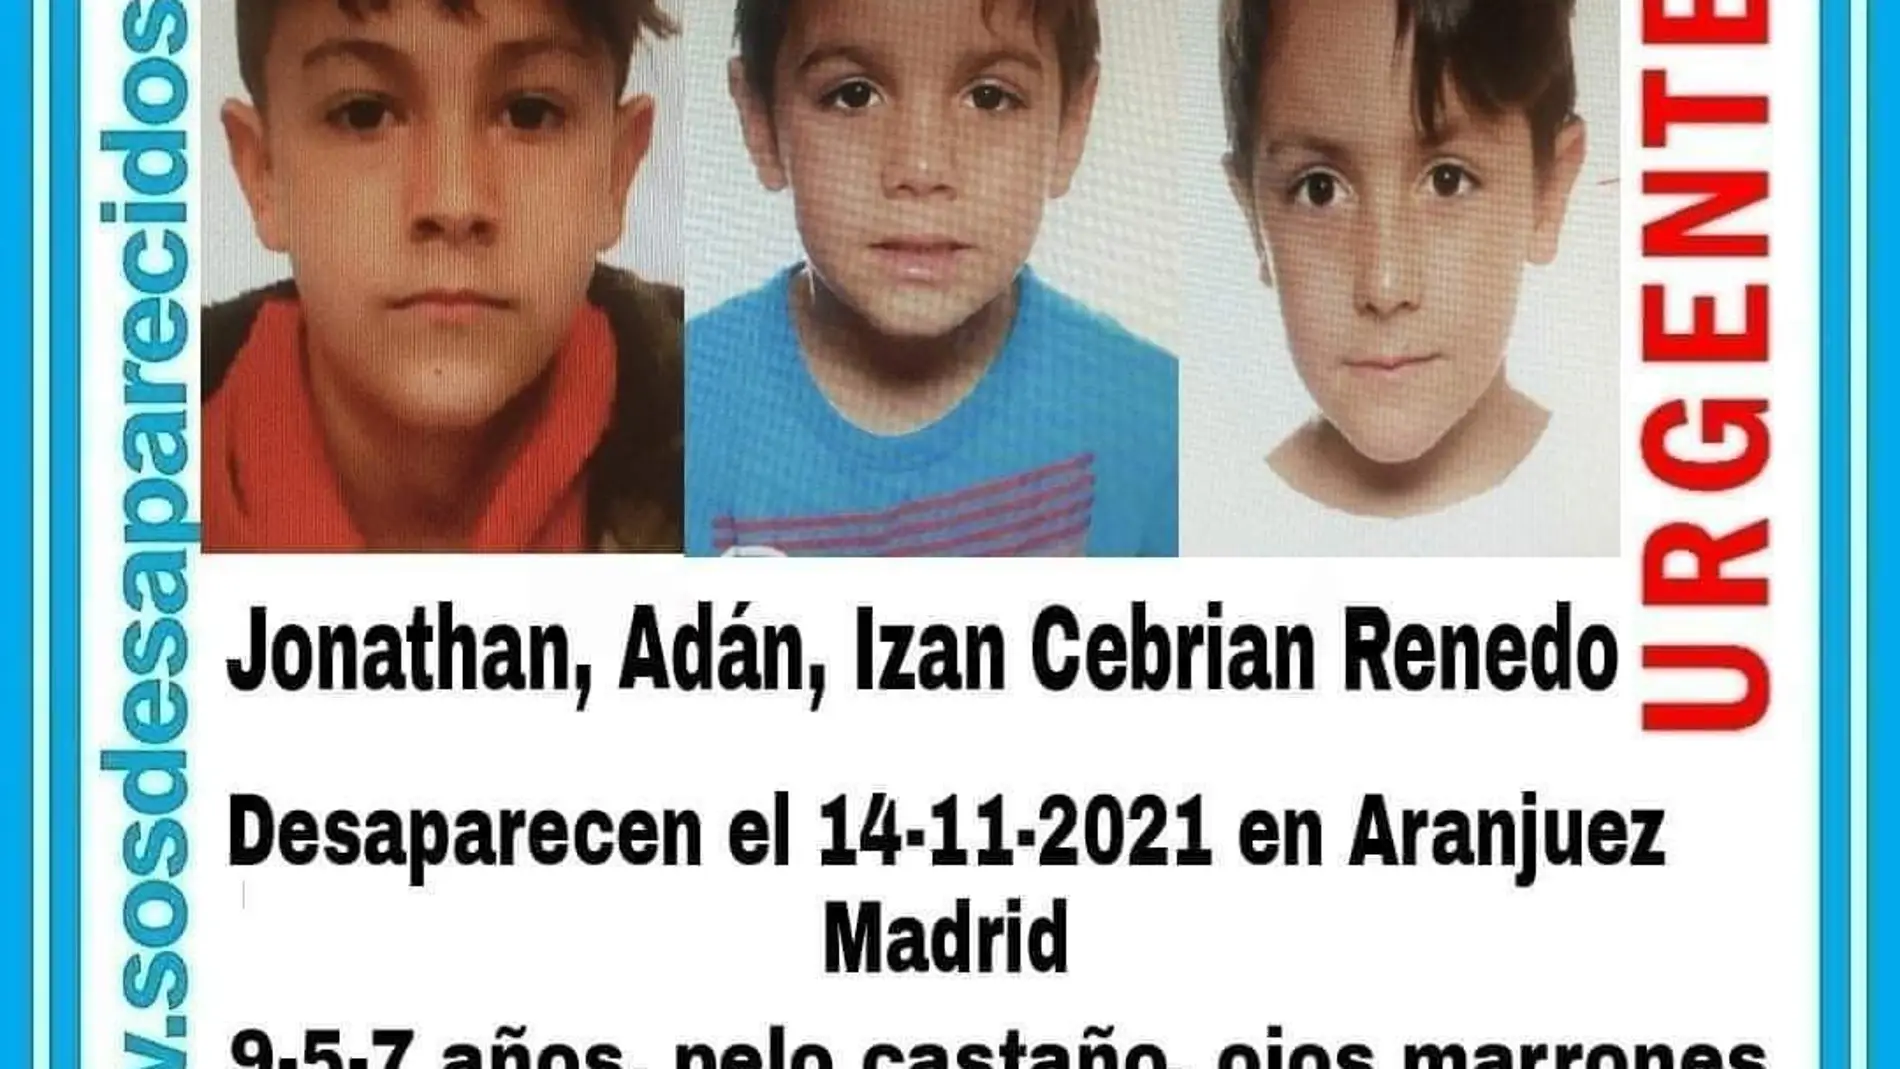 Las claves de la desaparición de los 3 hermanos de Aranjuez